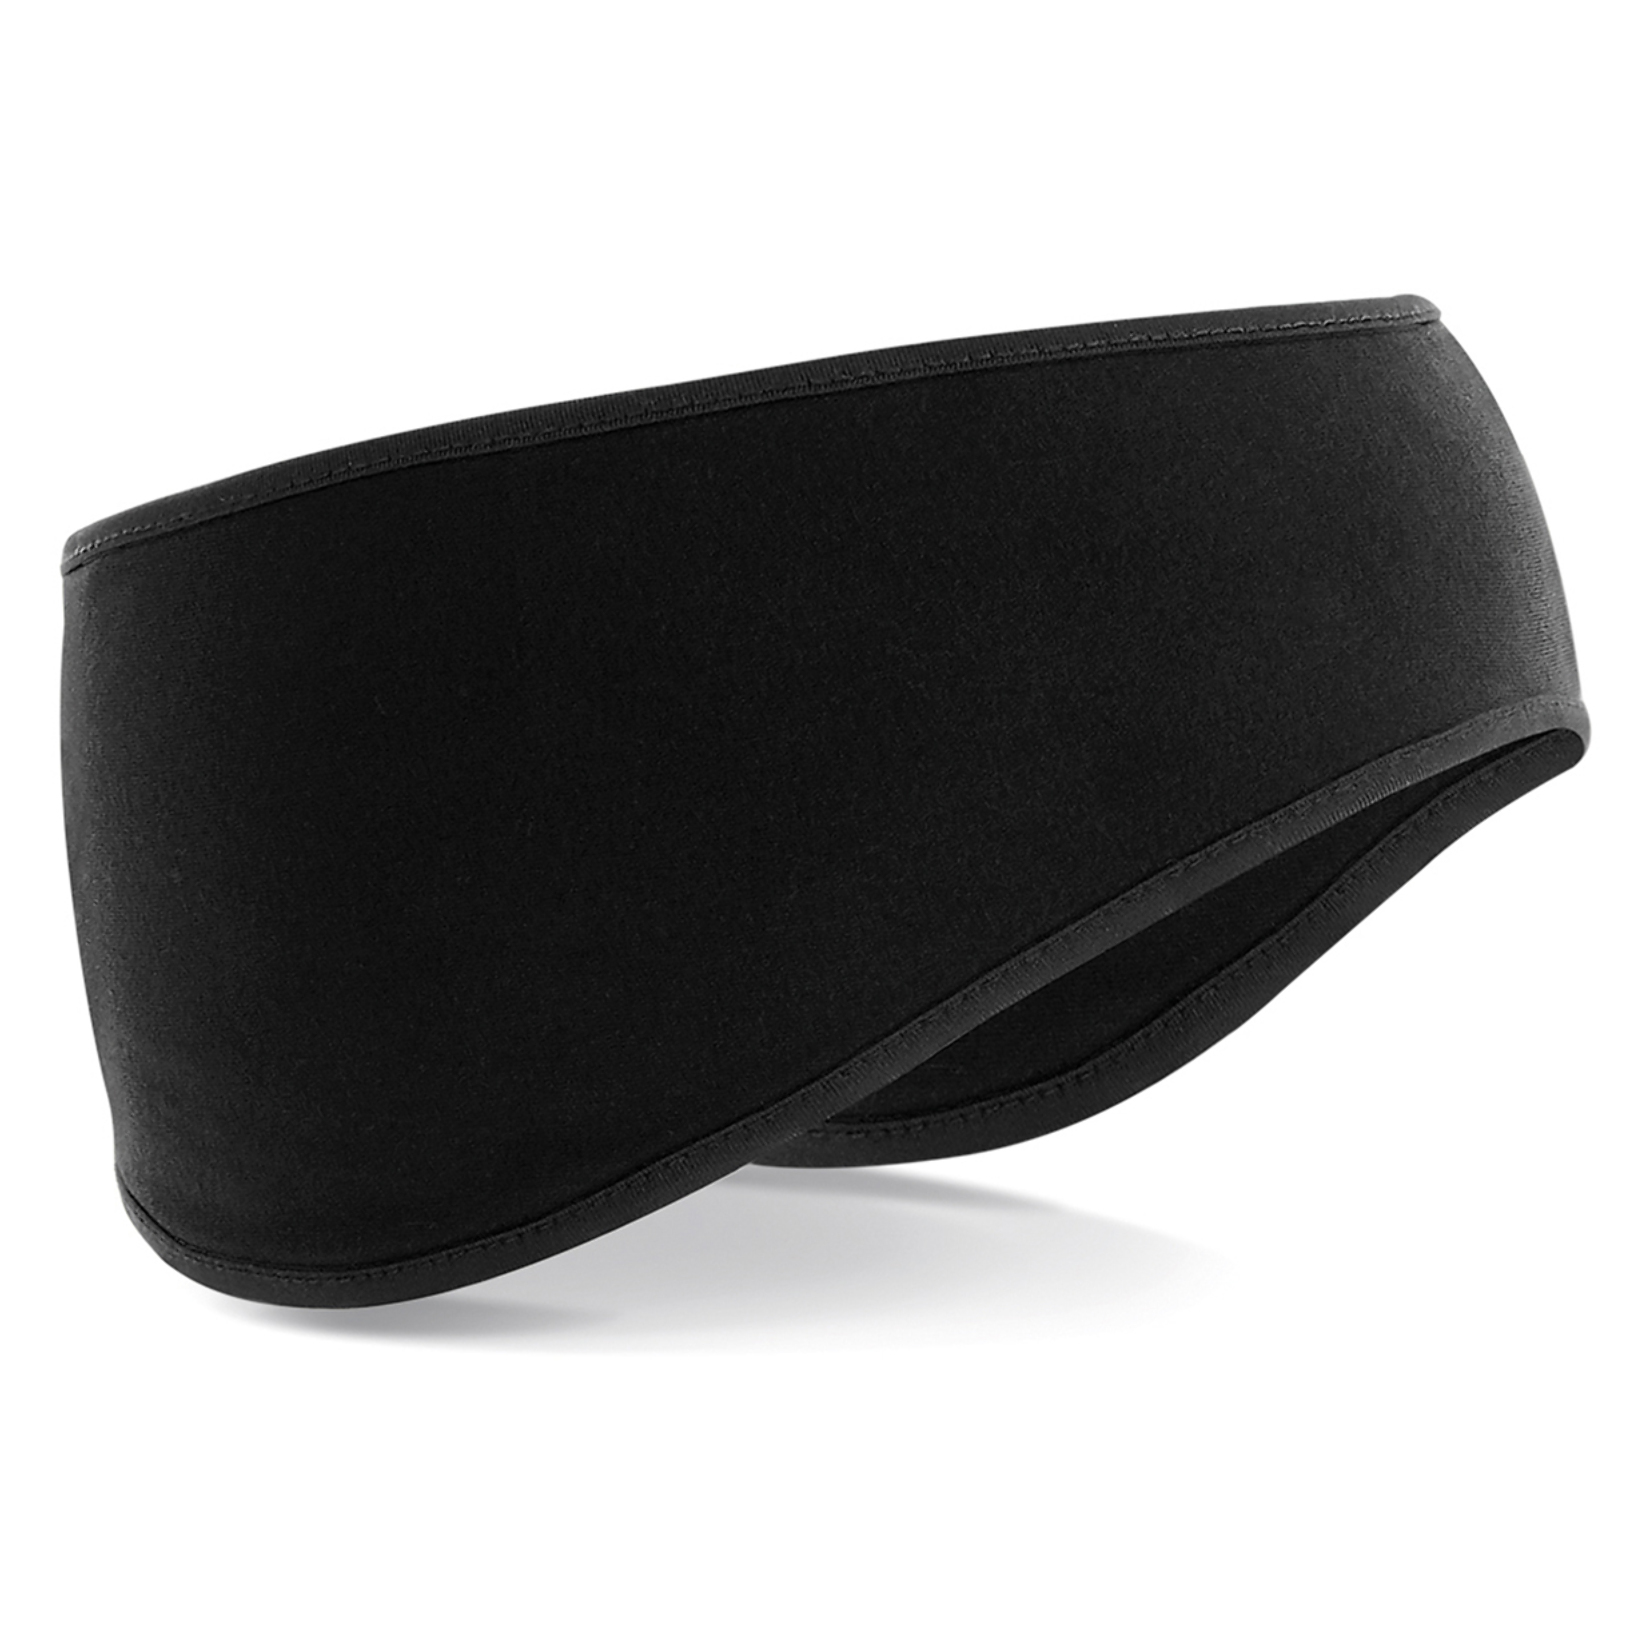 Softshell sports tech headband